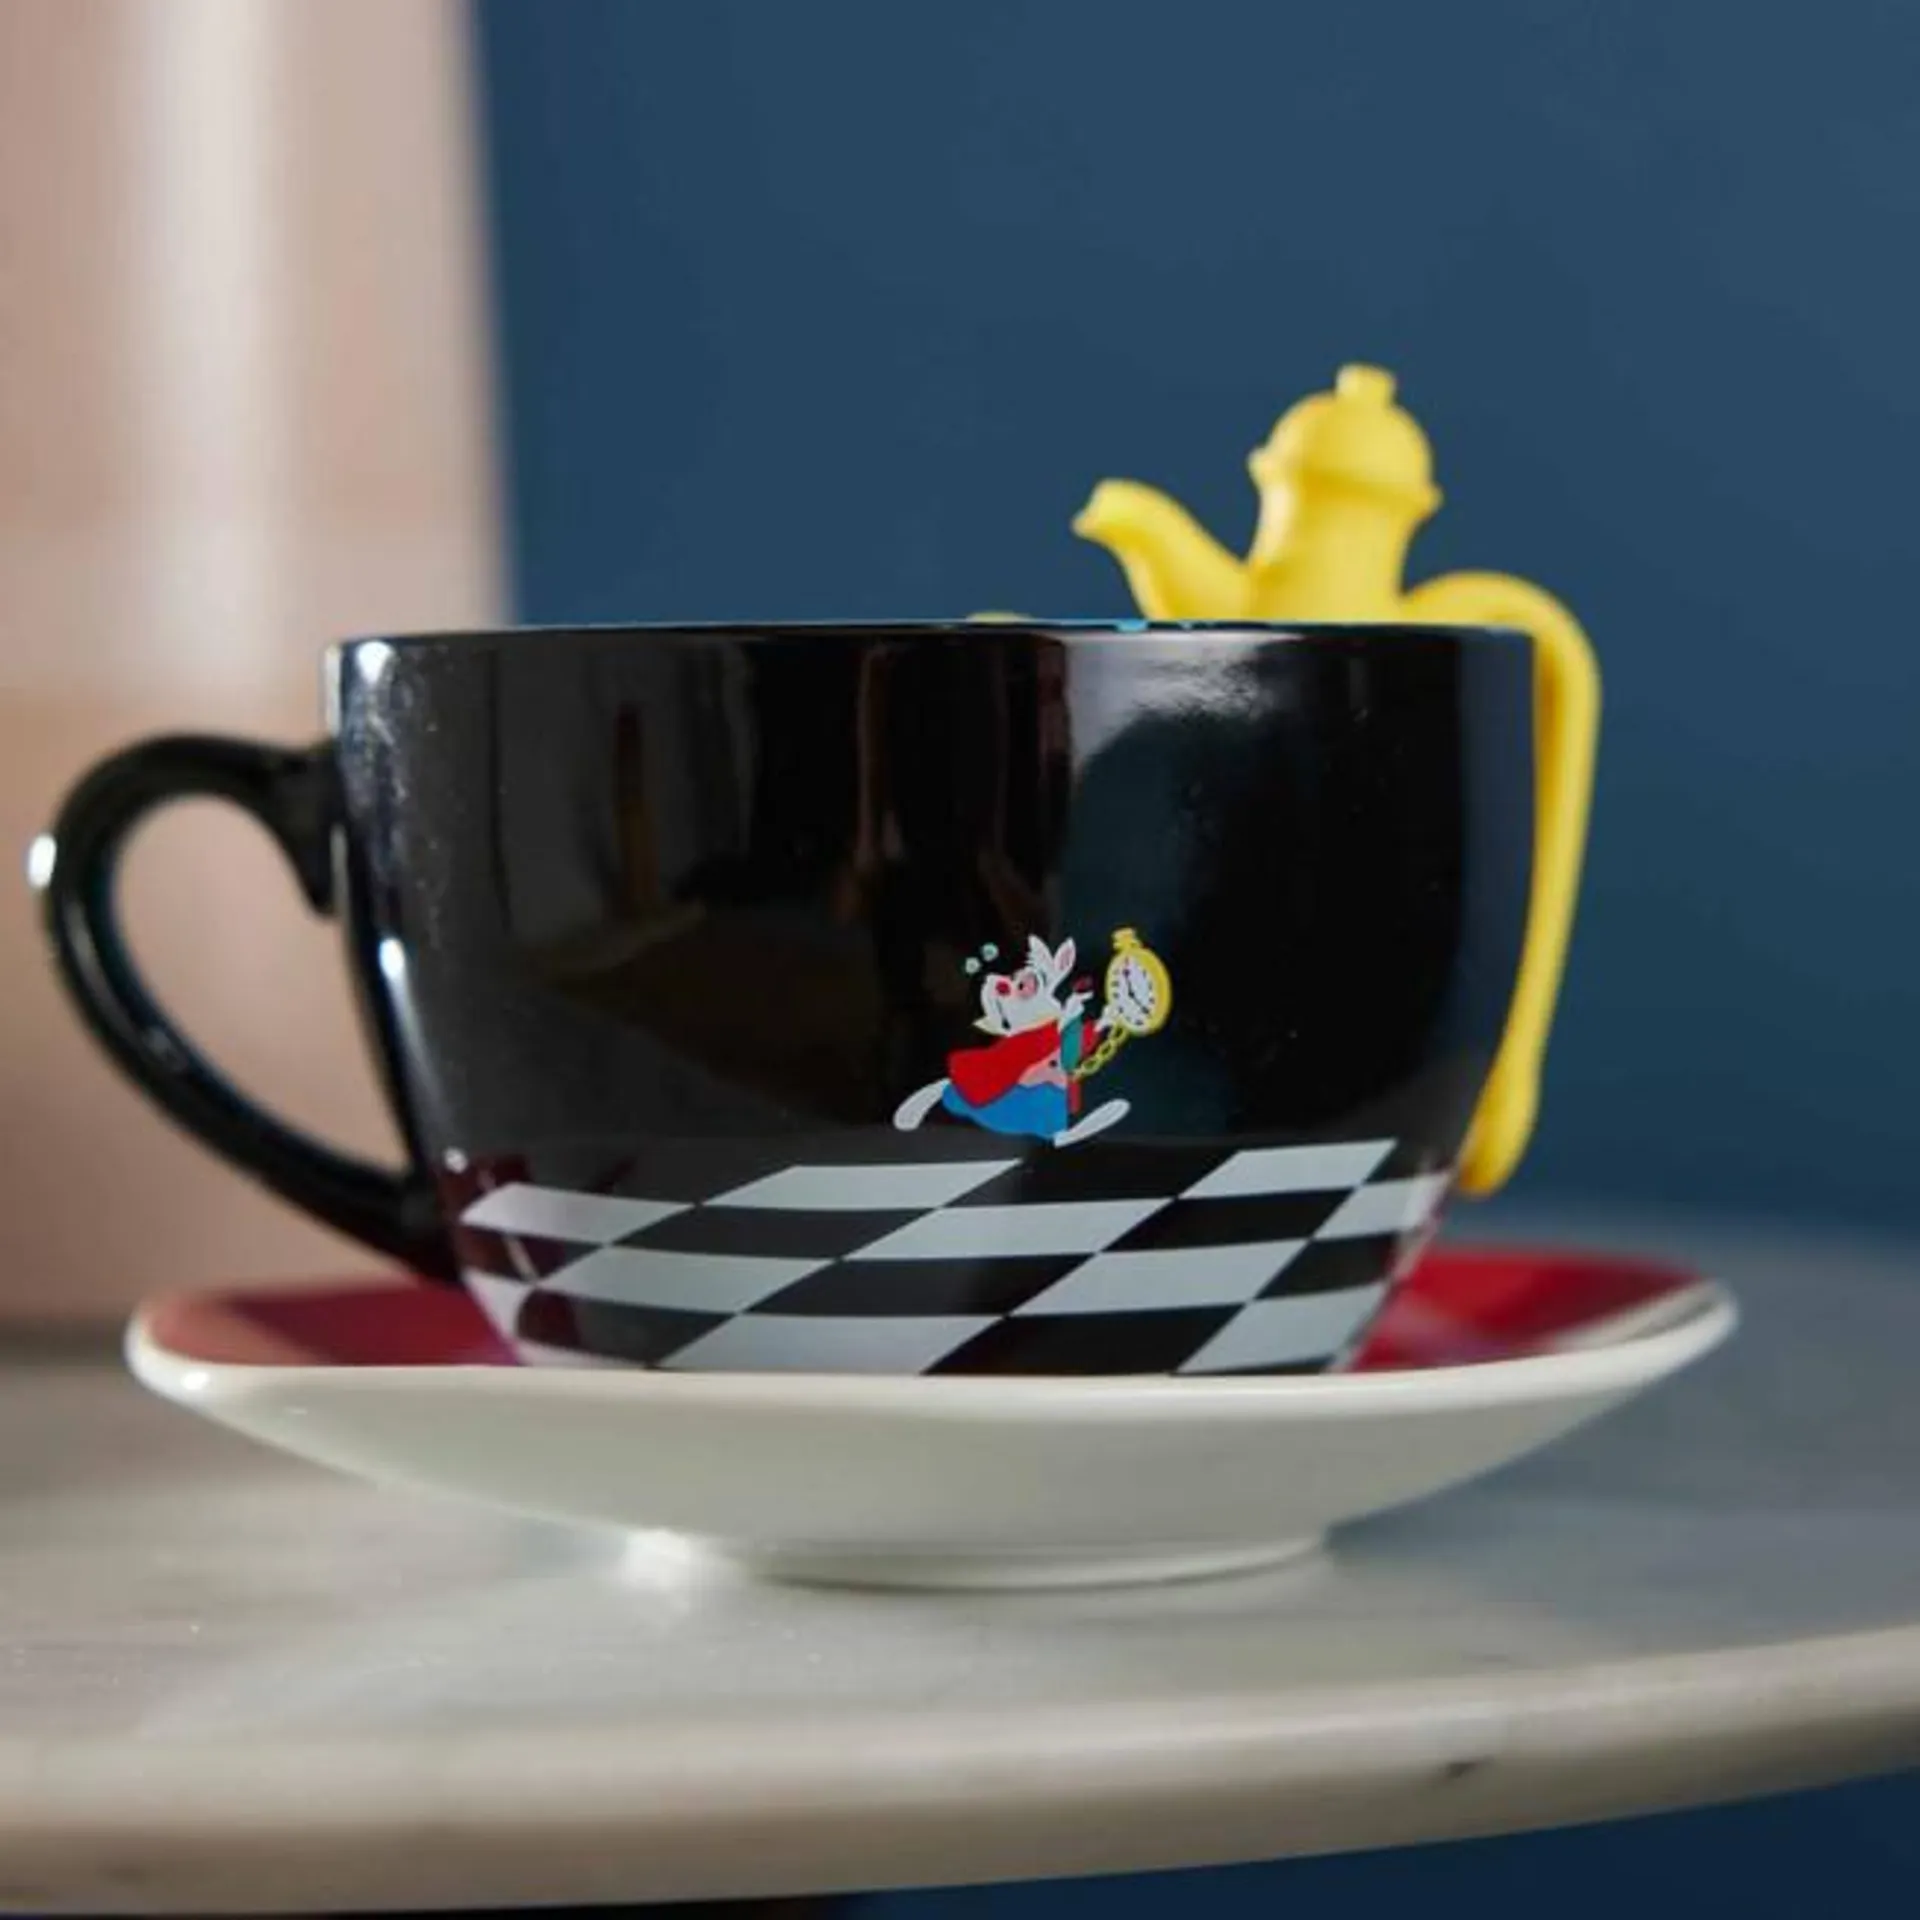 Disney Store Alice in Wonderland Mug, Saucer, and Tea Infuser Set